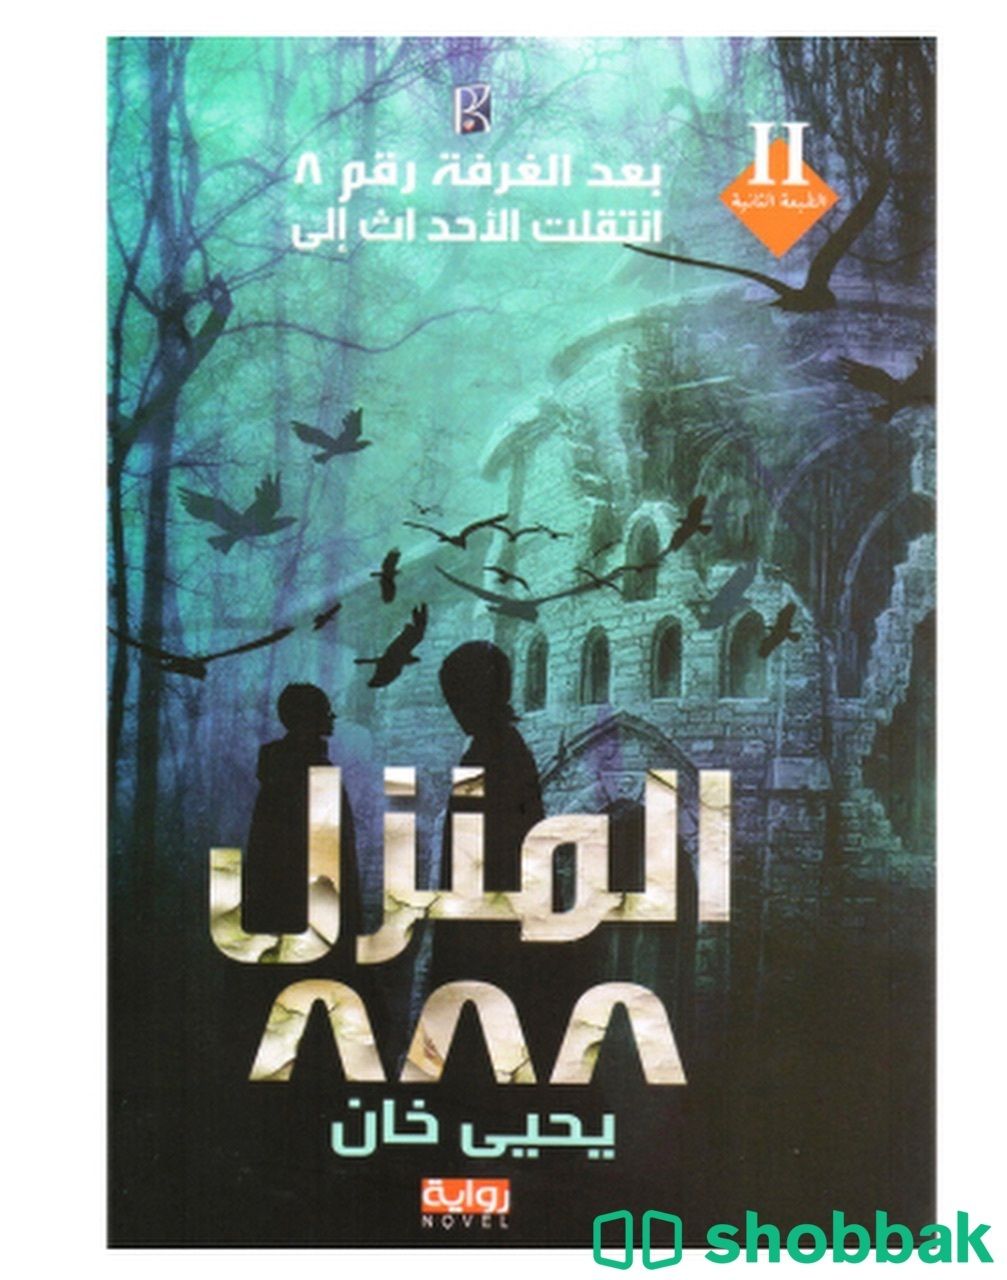 كتاب المنزل ٨٨٨ للكاتب يحيى خان  شباك السعودية